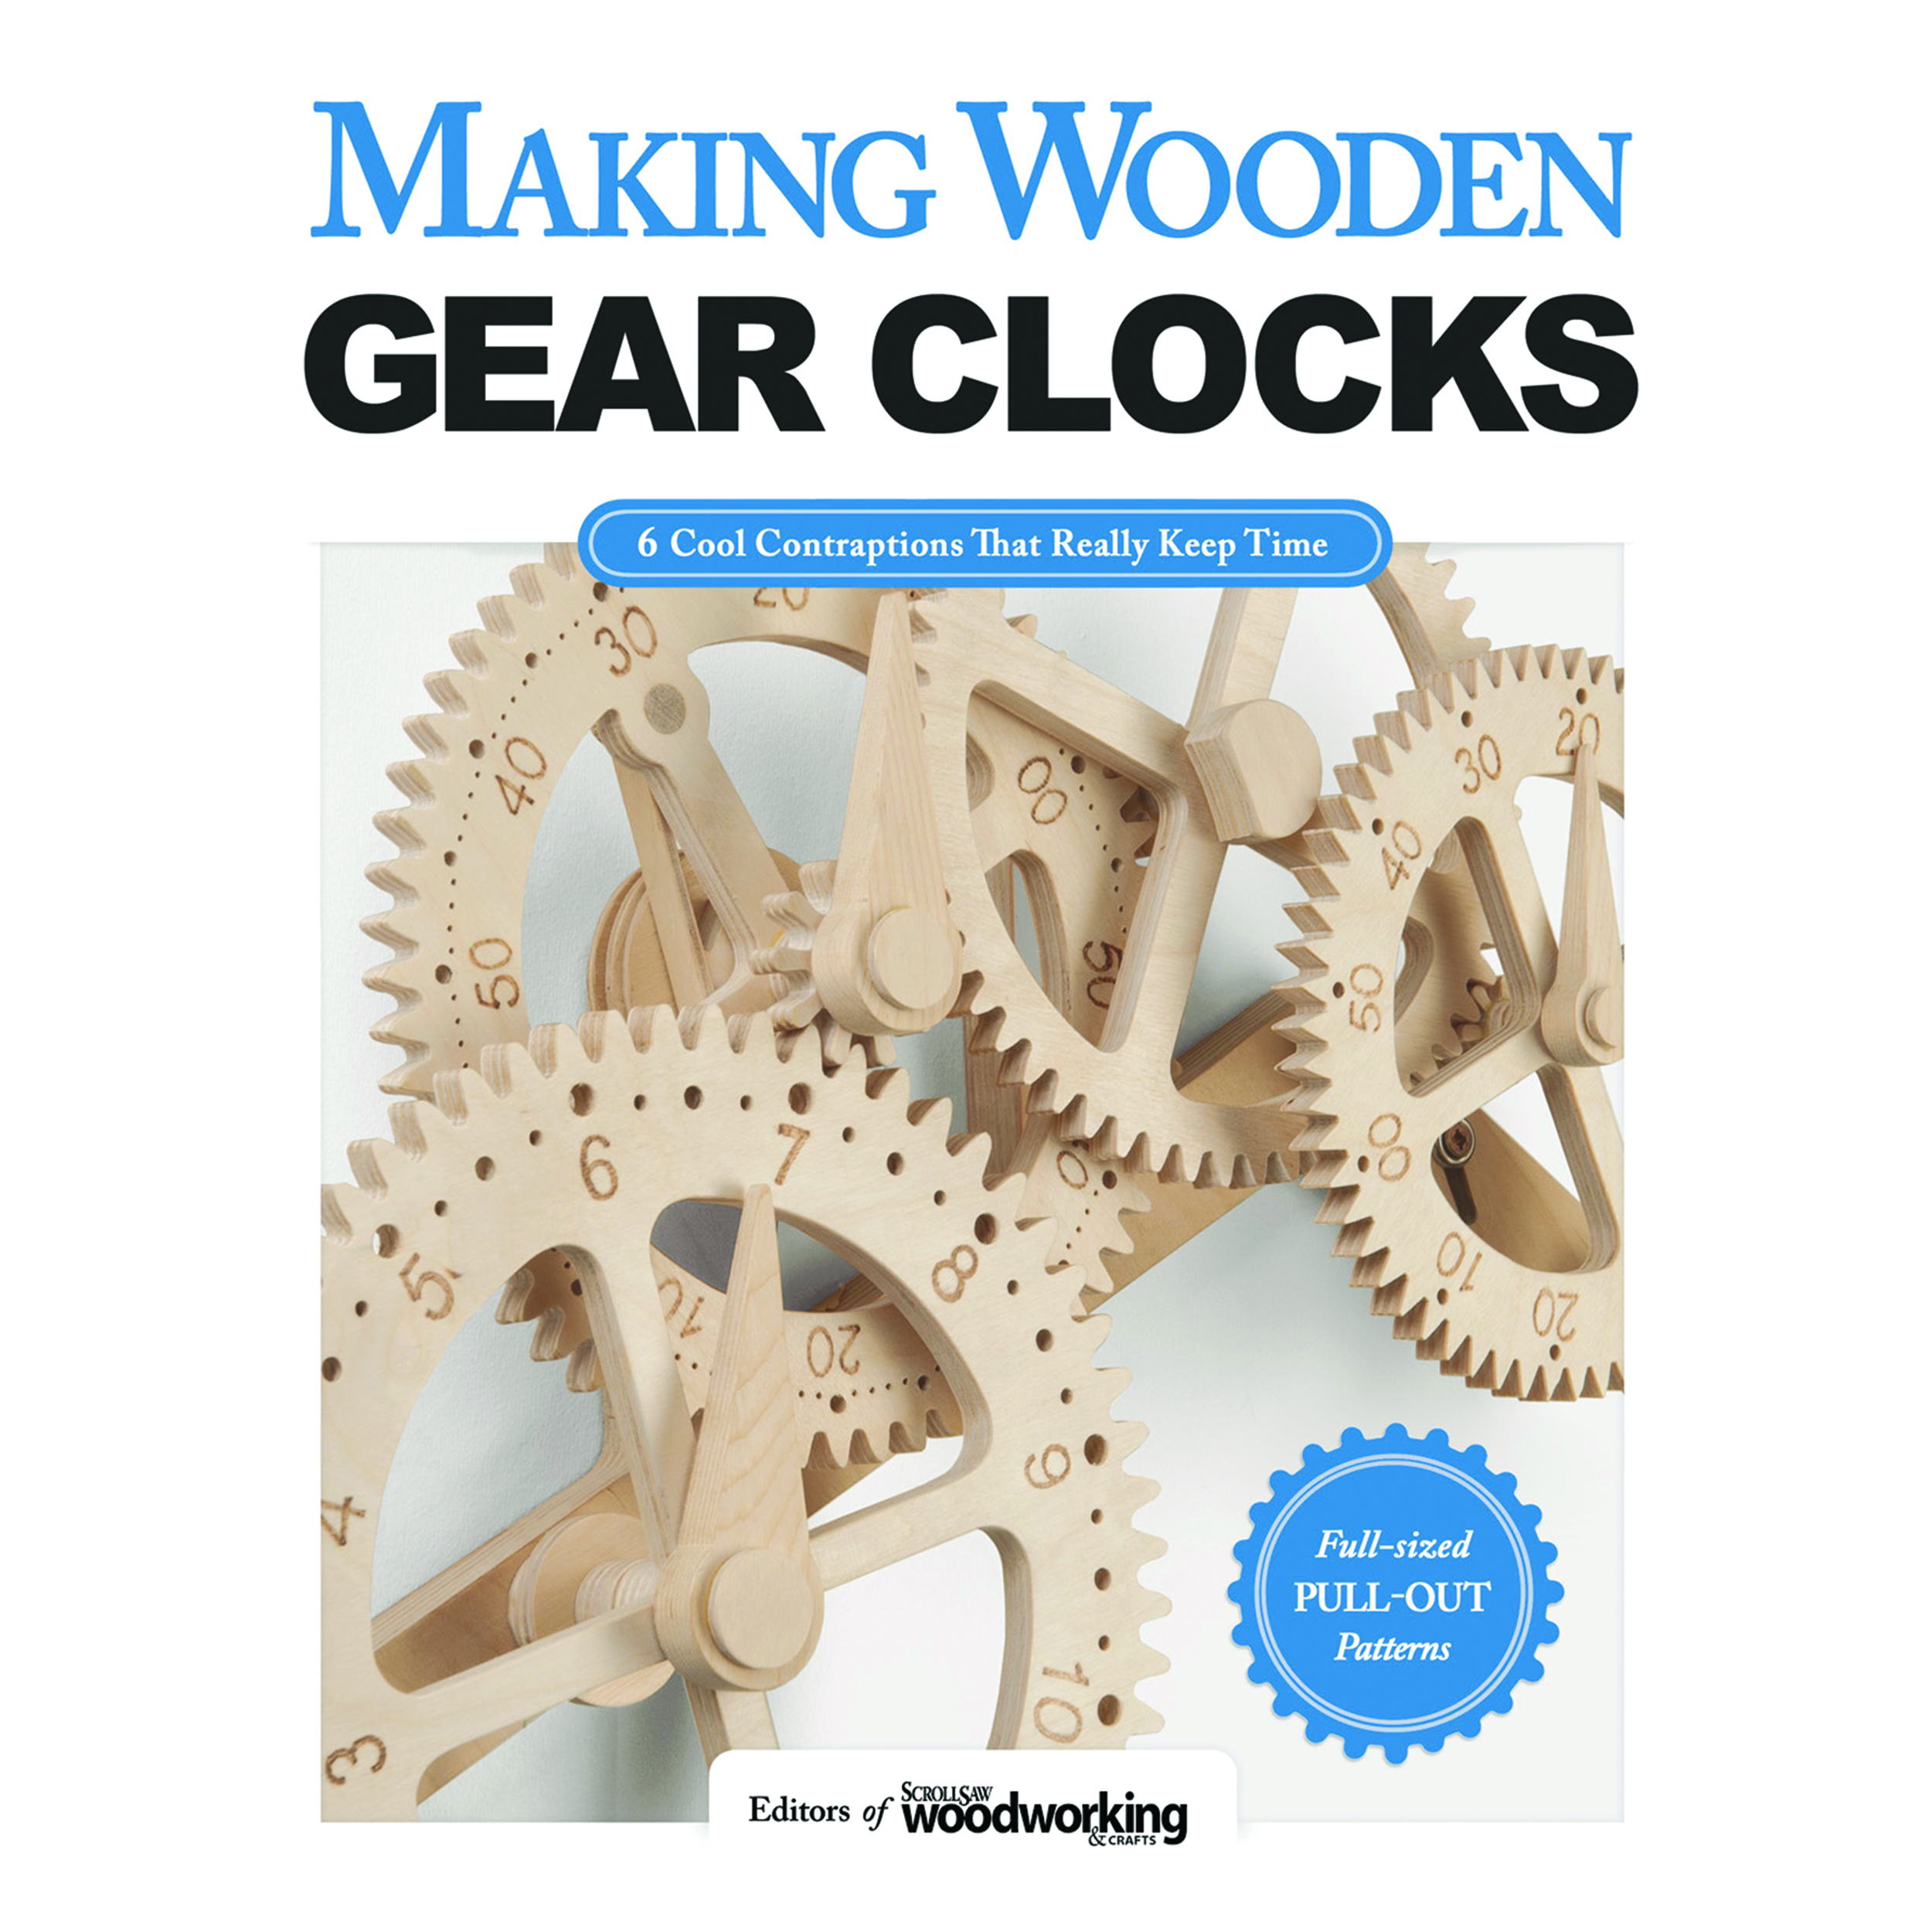 Making Wooden Gear Clocks